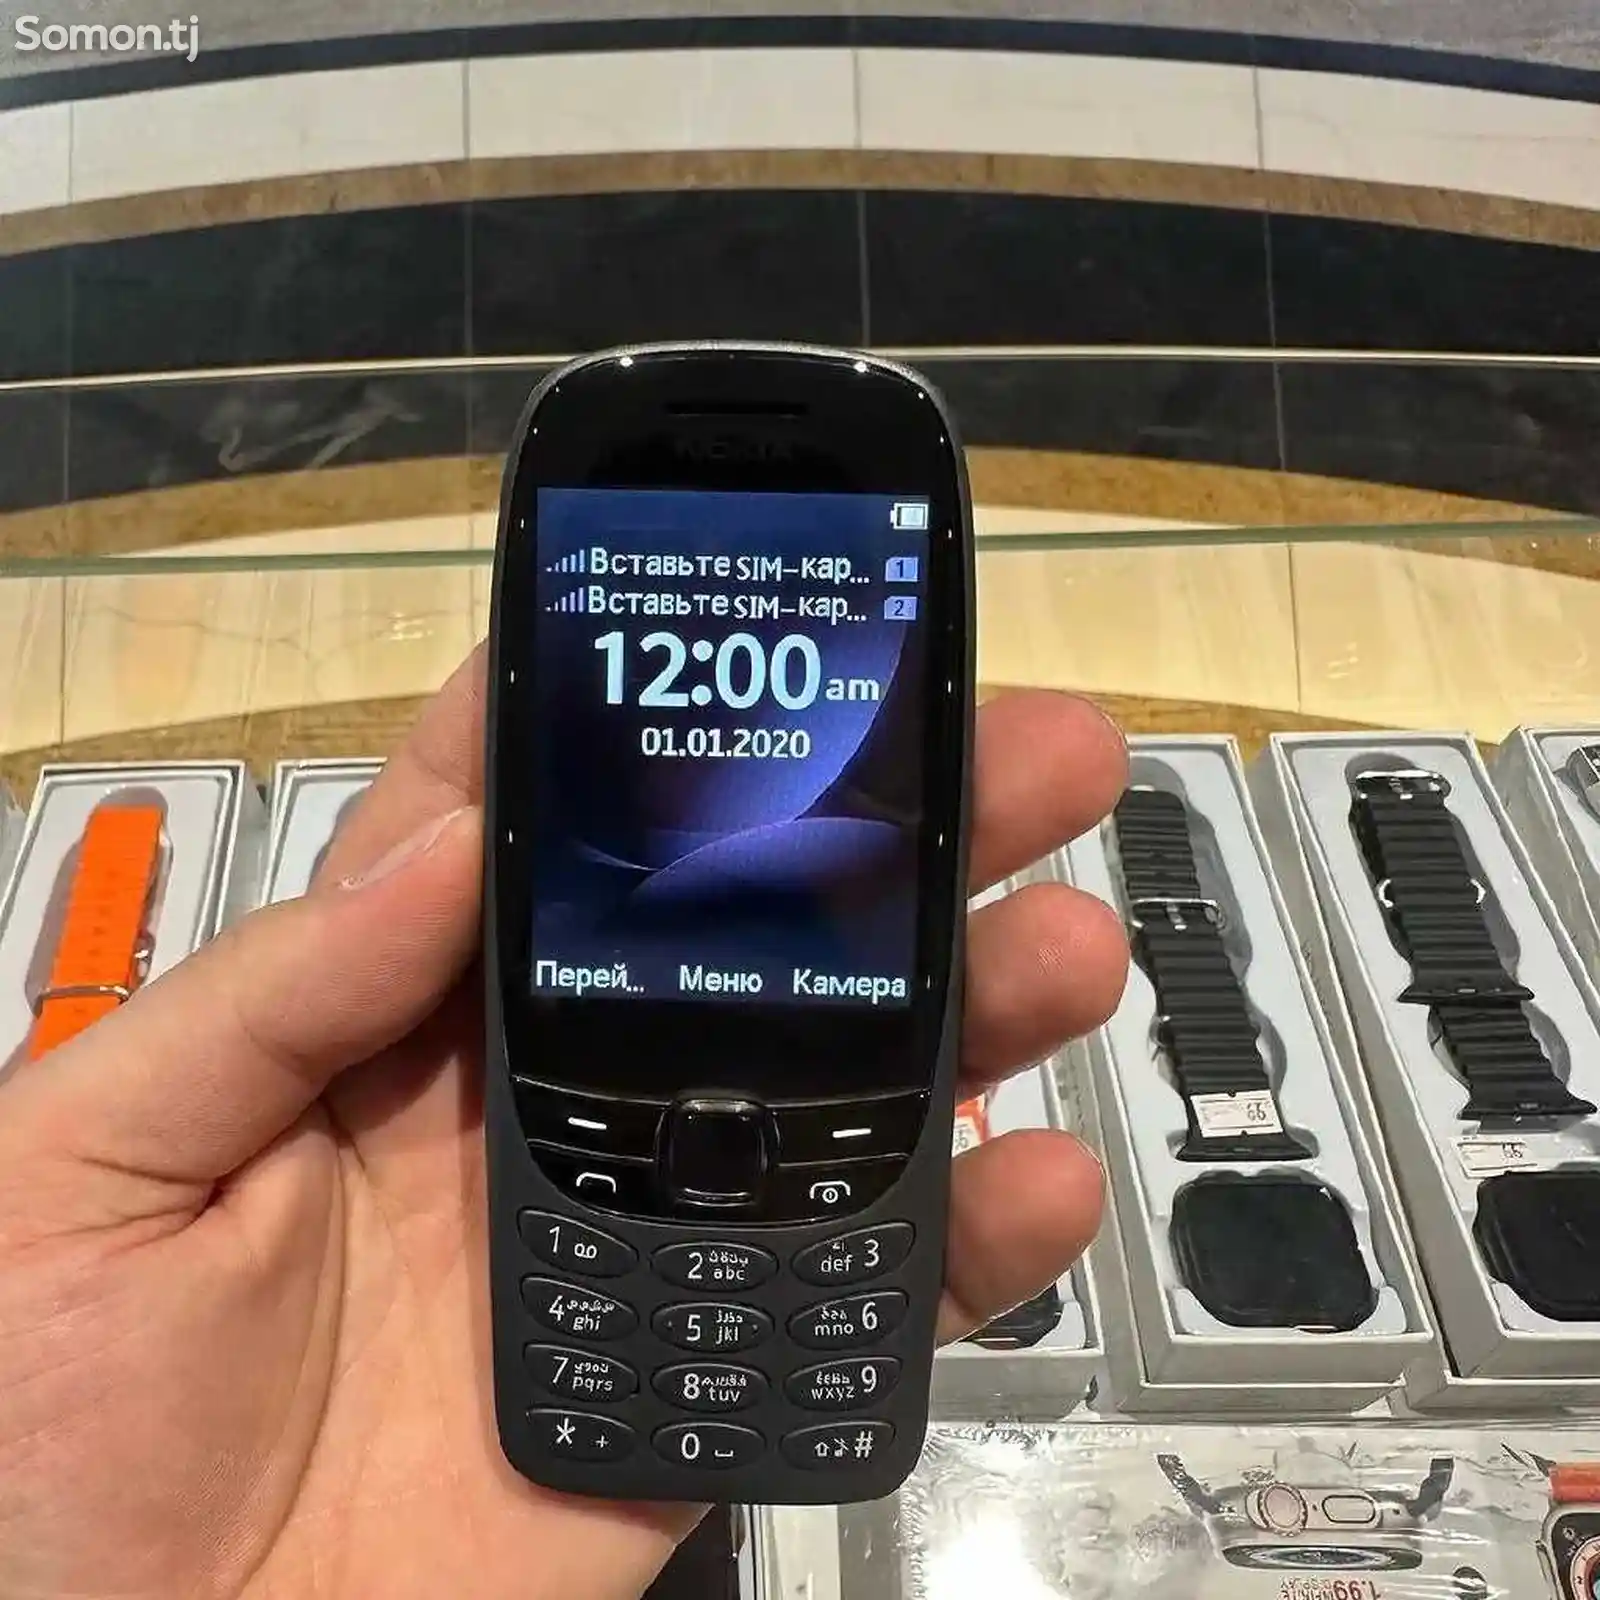 Nokia 6310-5